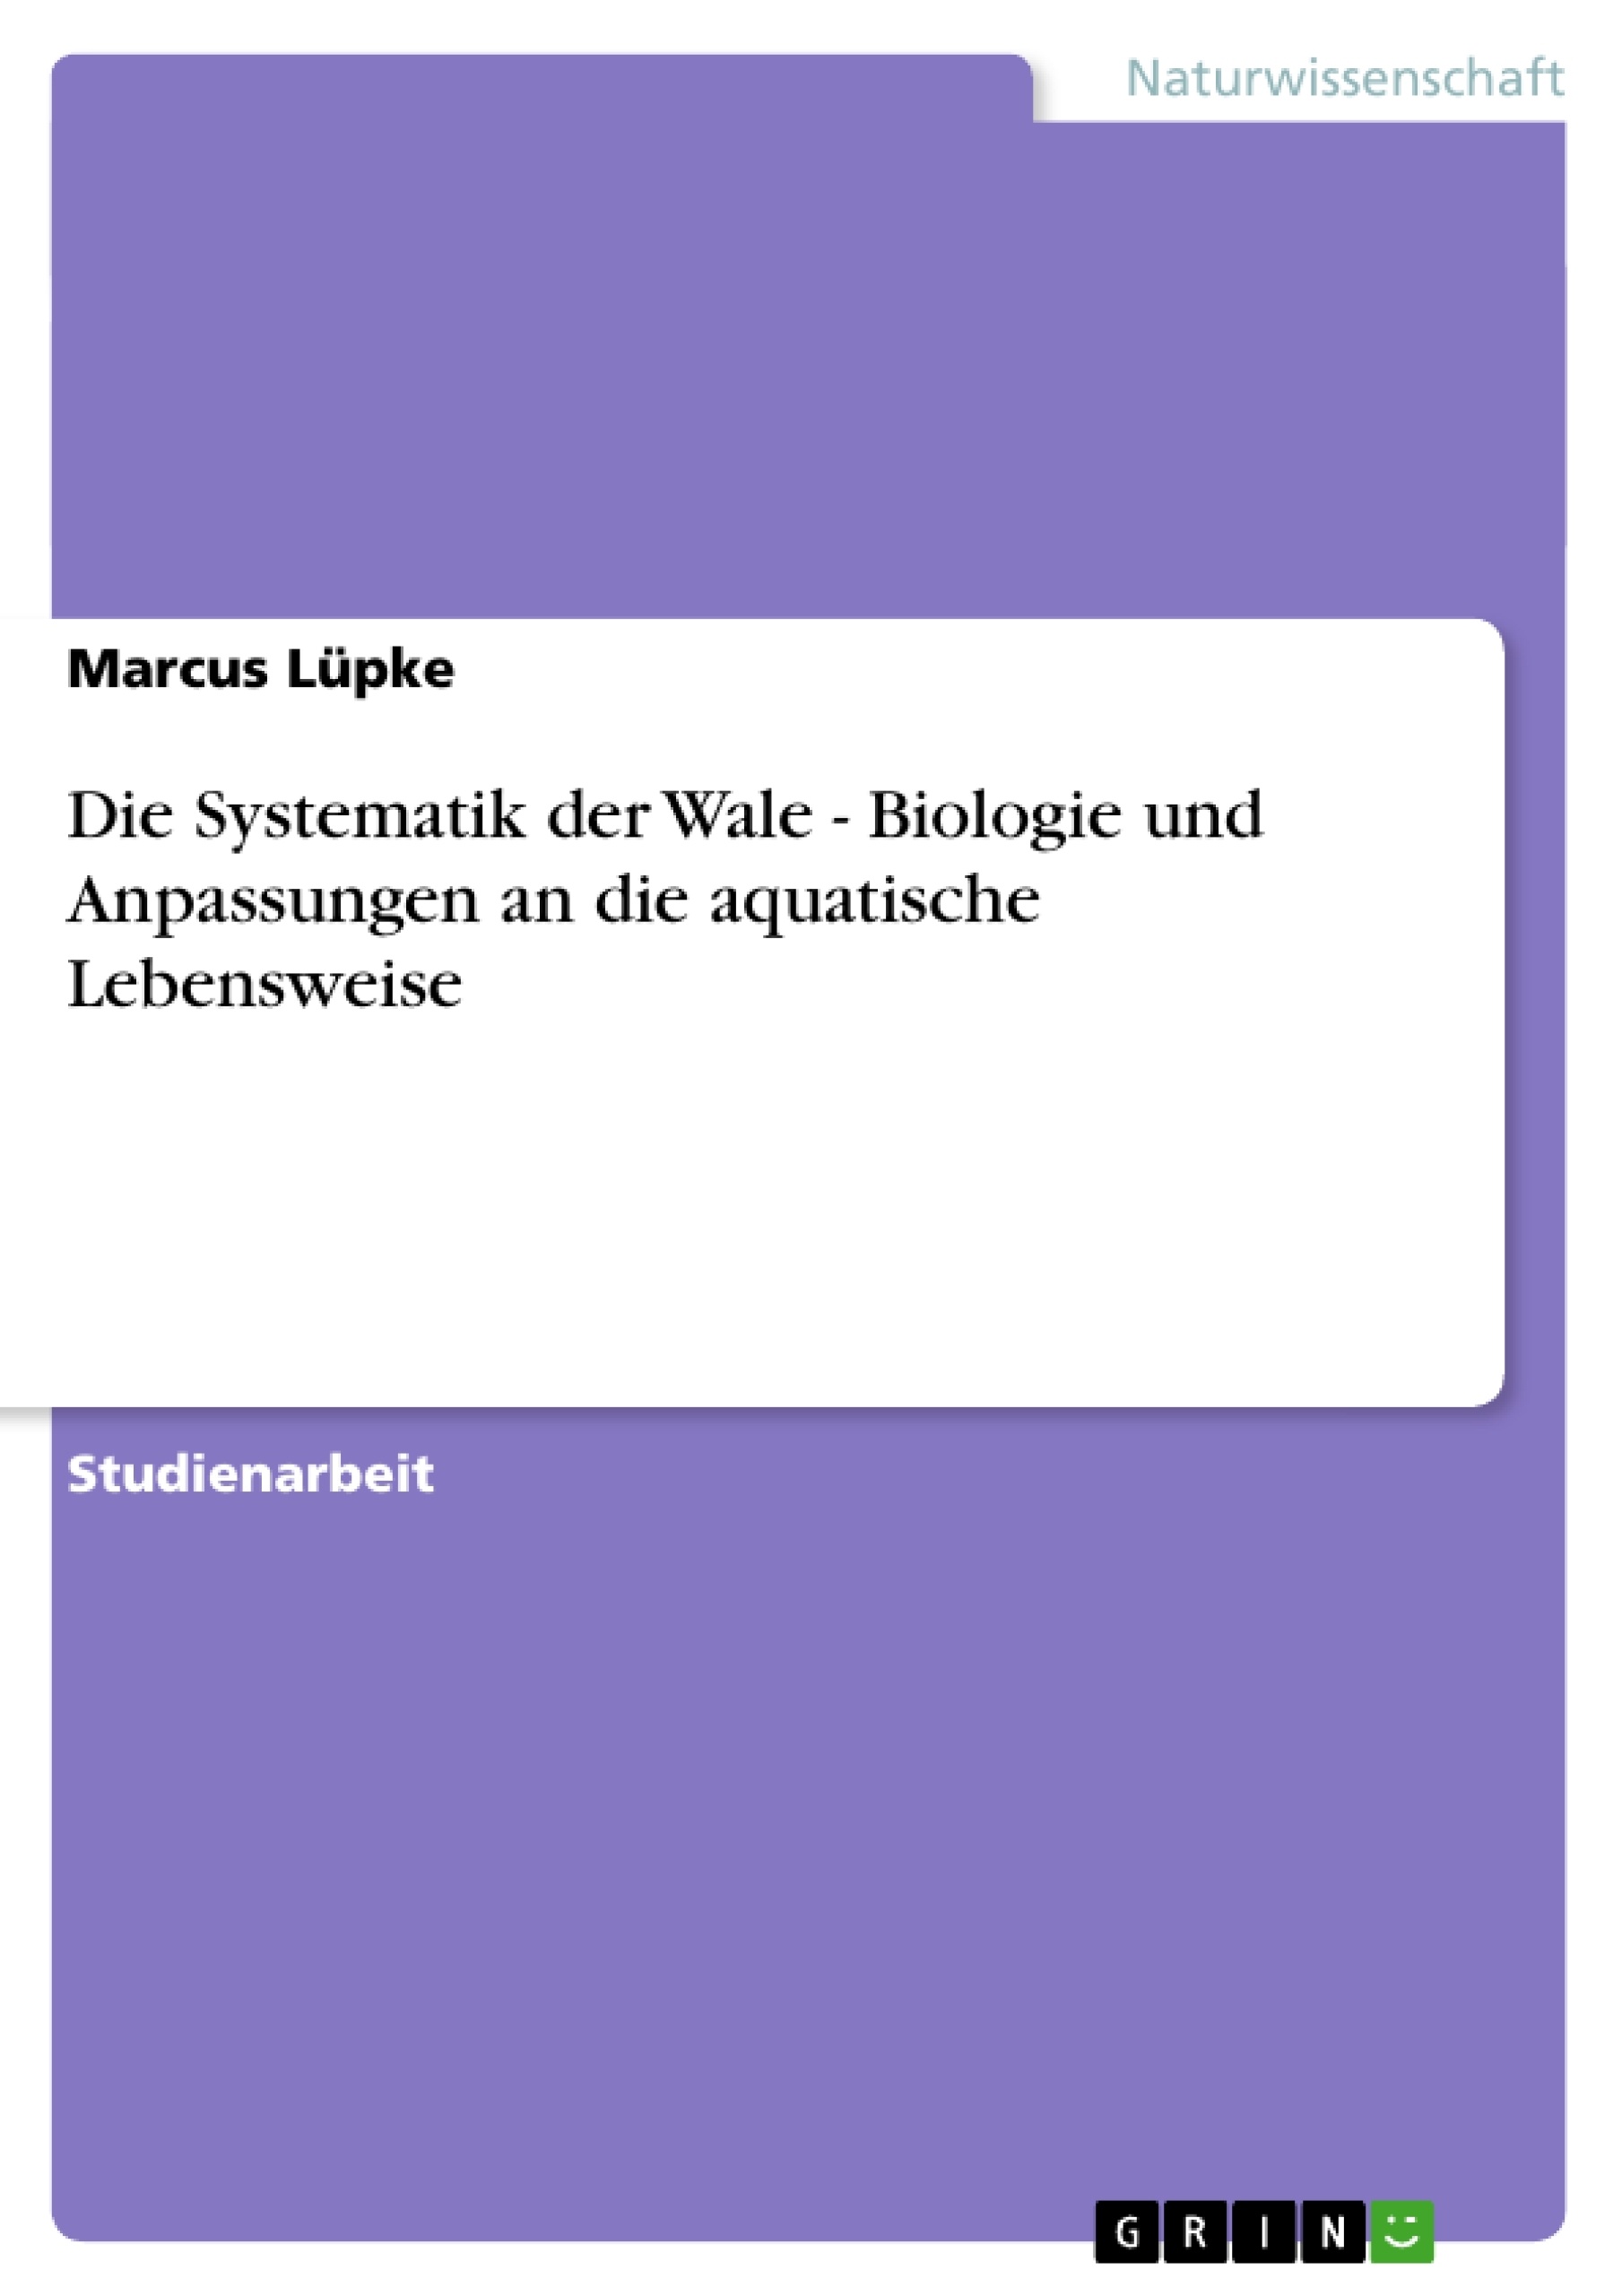 Titre: Die Systematik der Wale - Biologie und Anpassungen an die aquatische Lebensweise